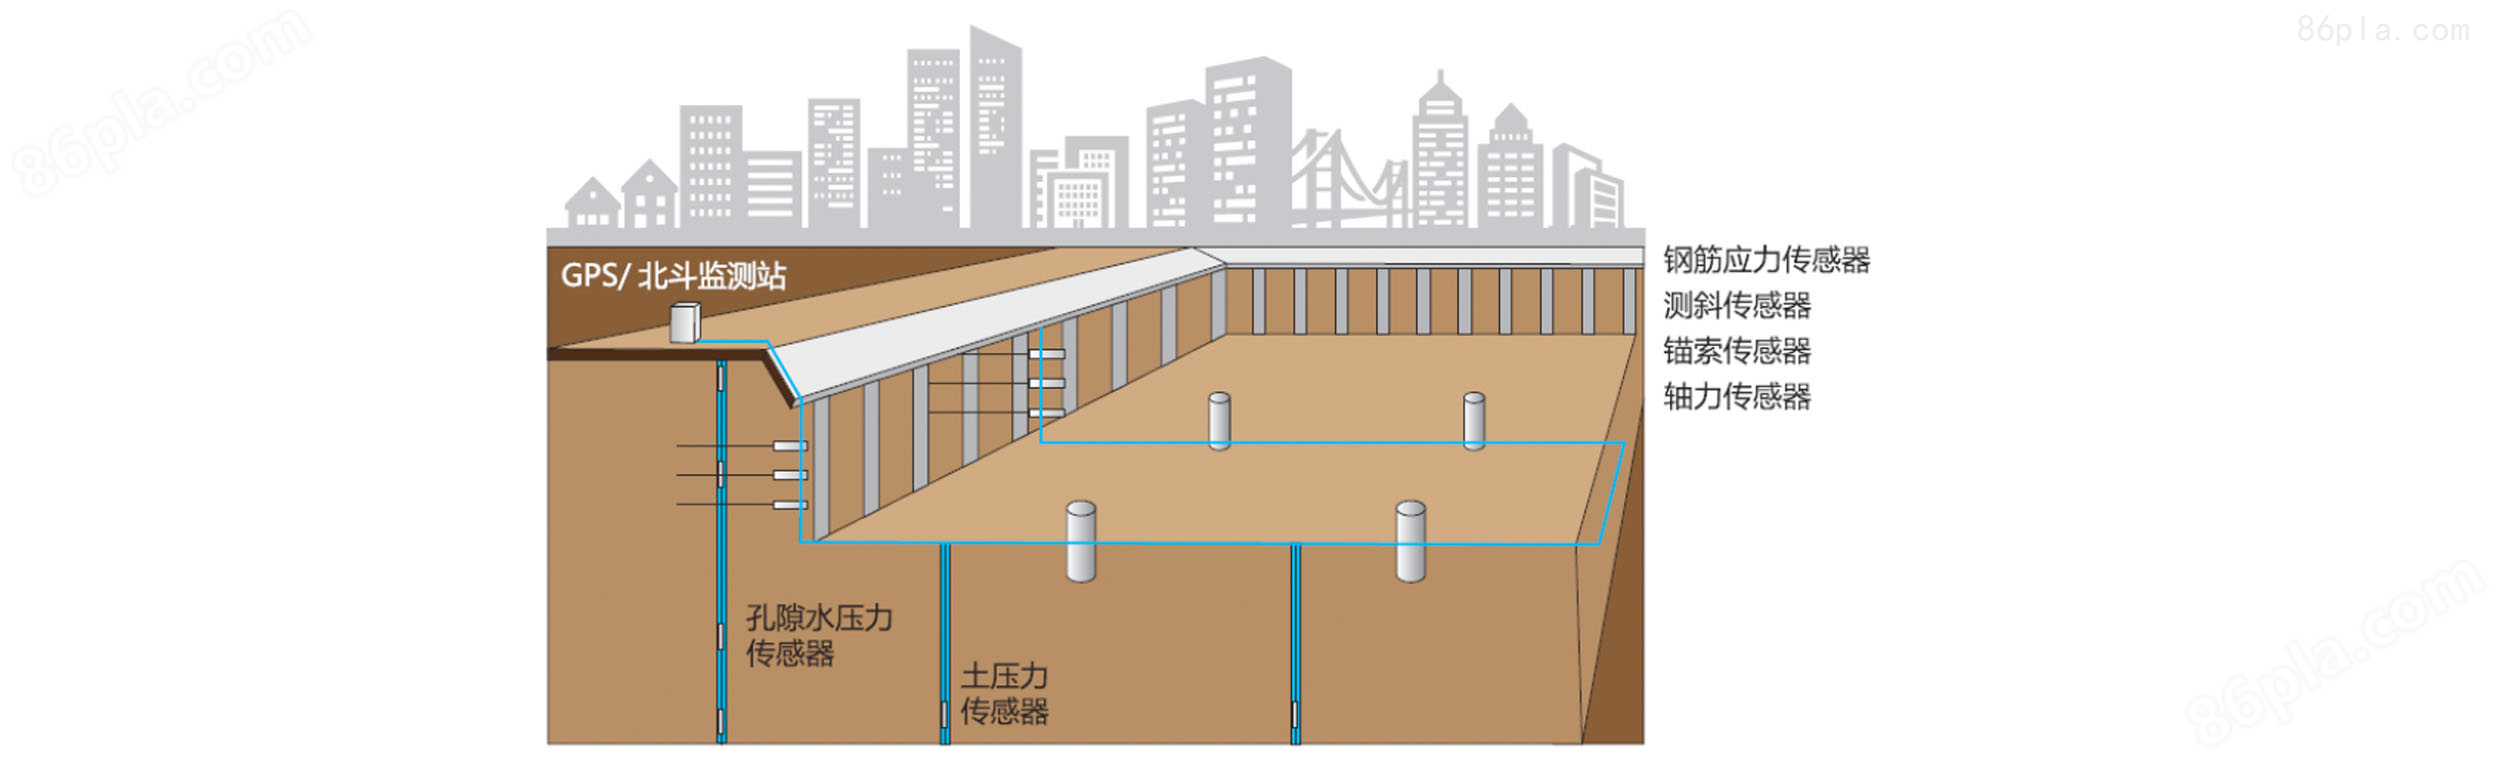 大型地下建筑环境监测系统方案